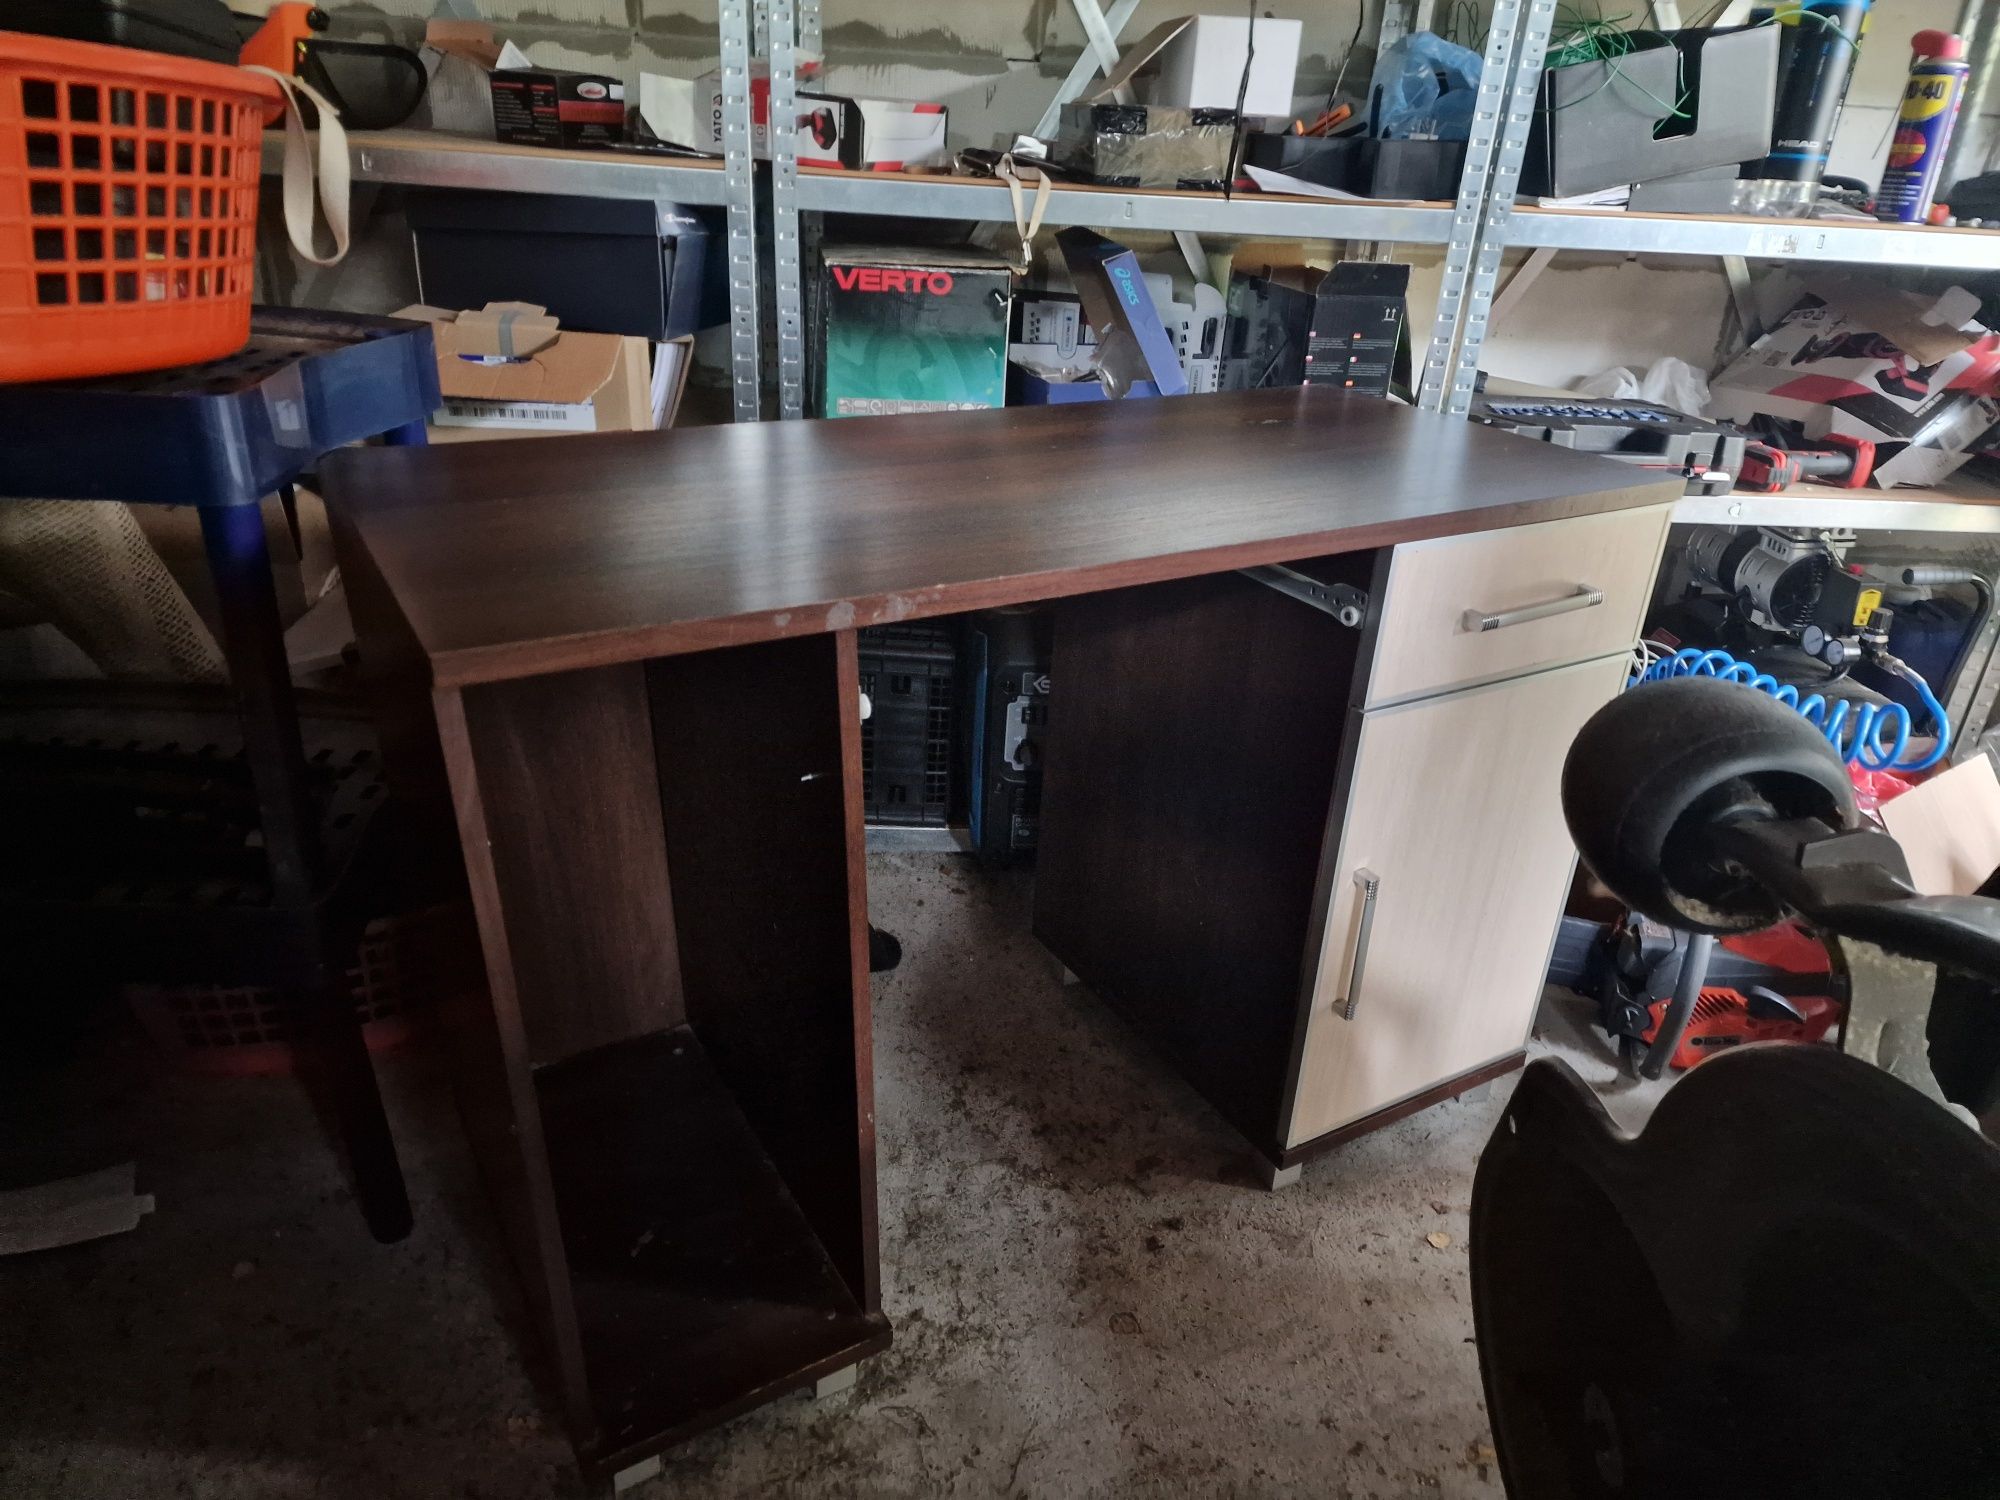 Drewniane biurko